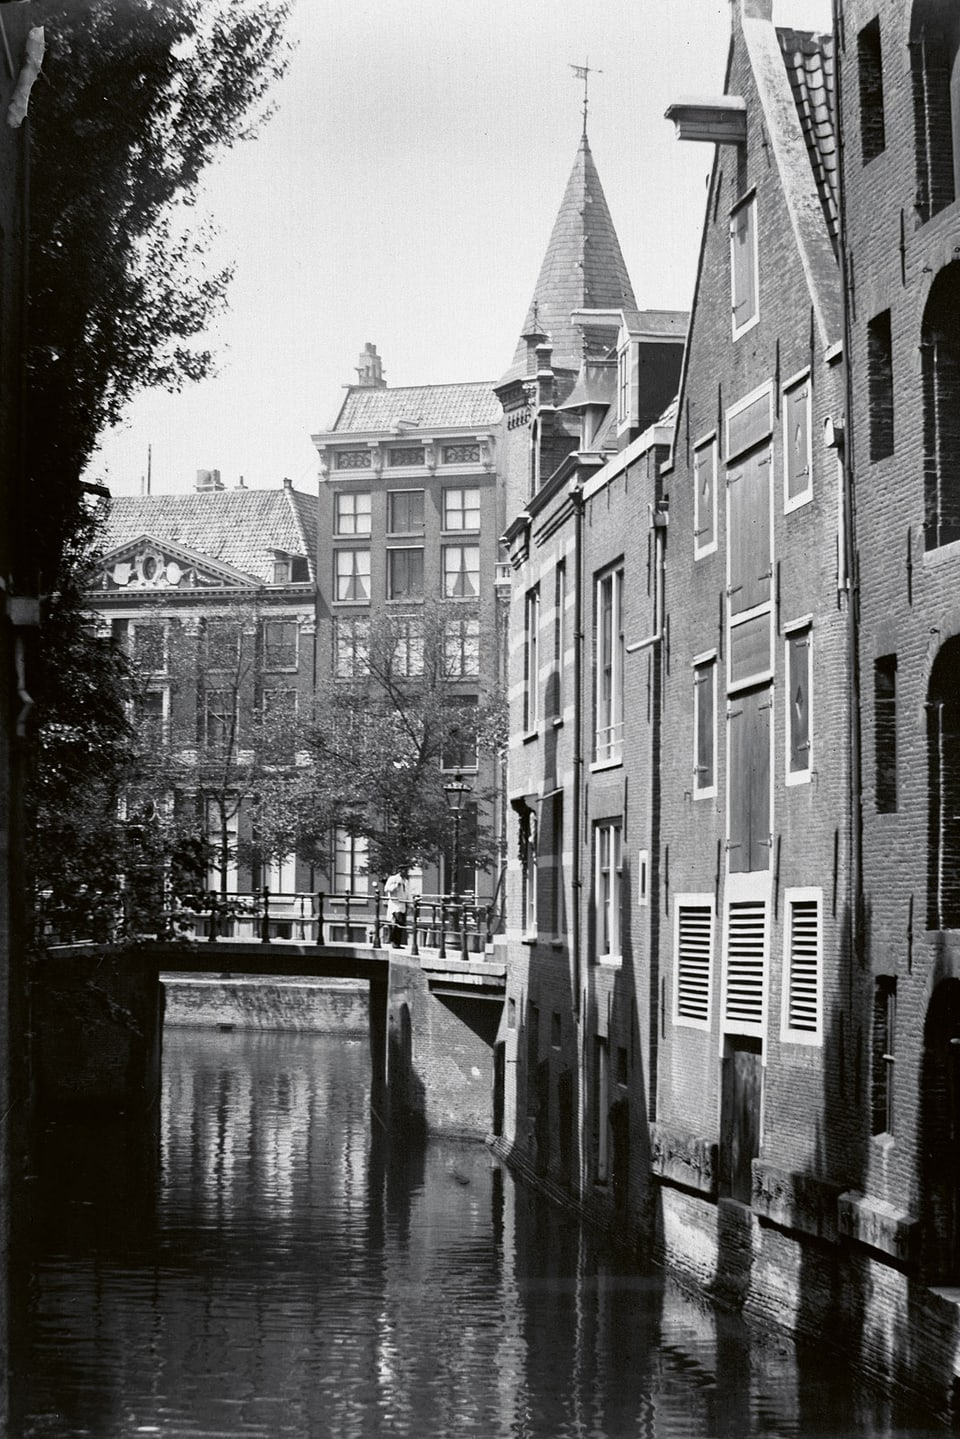 Schwarzweiss-Aufnahme eines Kanals mit Backsteinhäusern.